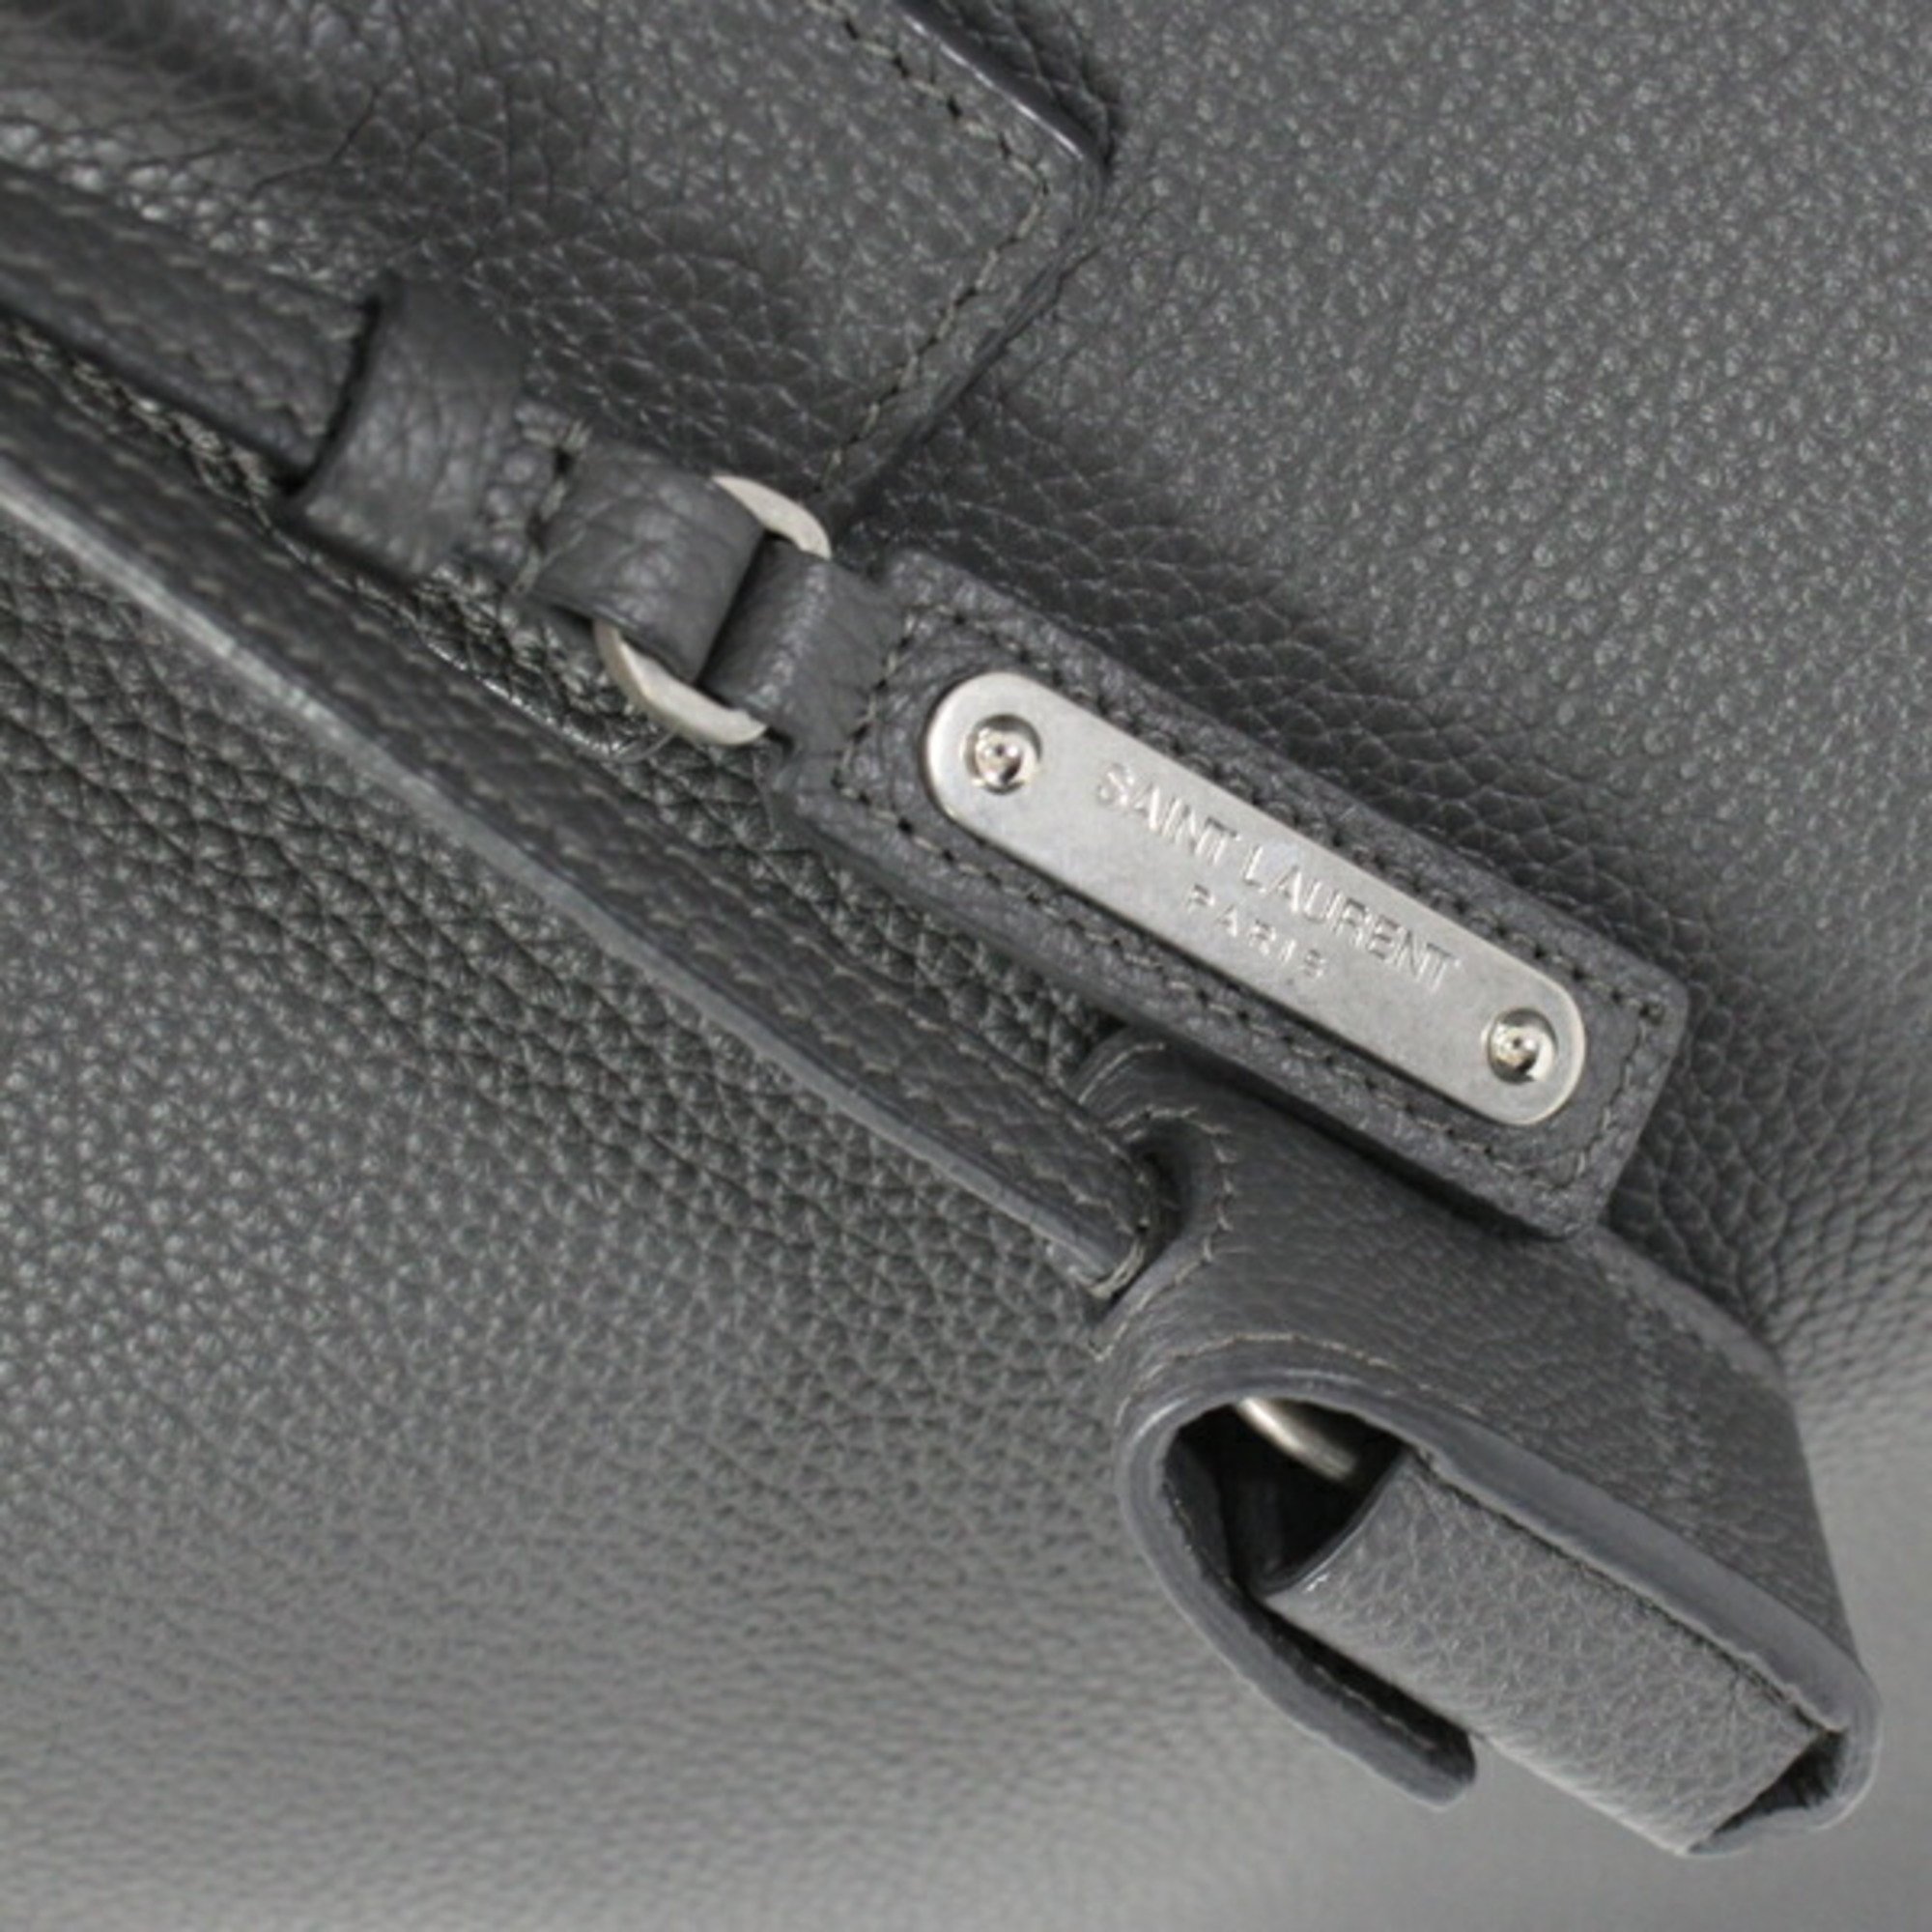 Saint Laurent Handbag North/South Sac du Jour Tote Bag Grey Grained Leather SAINT LAURENT Men's 480583